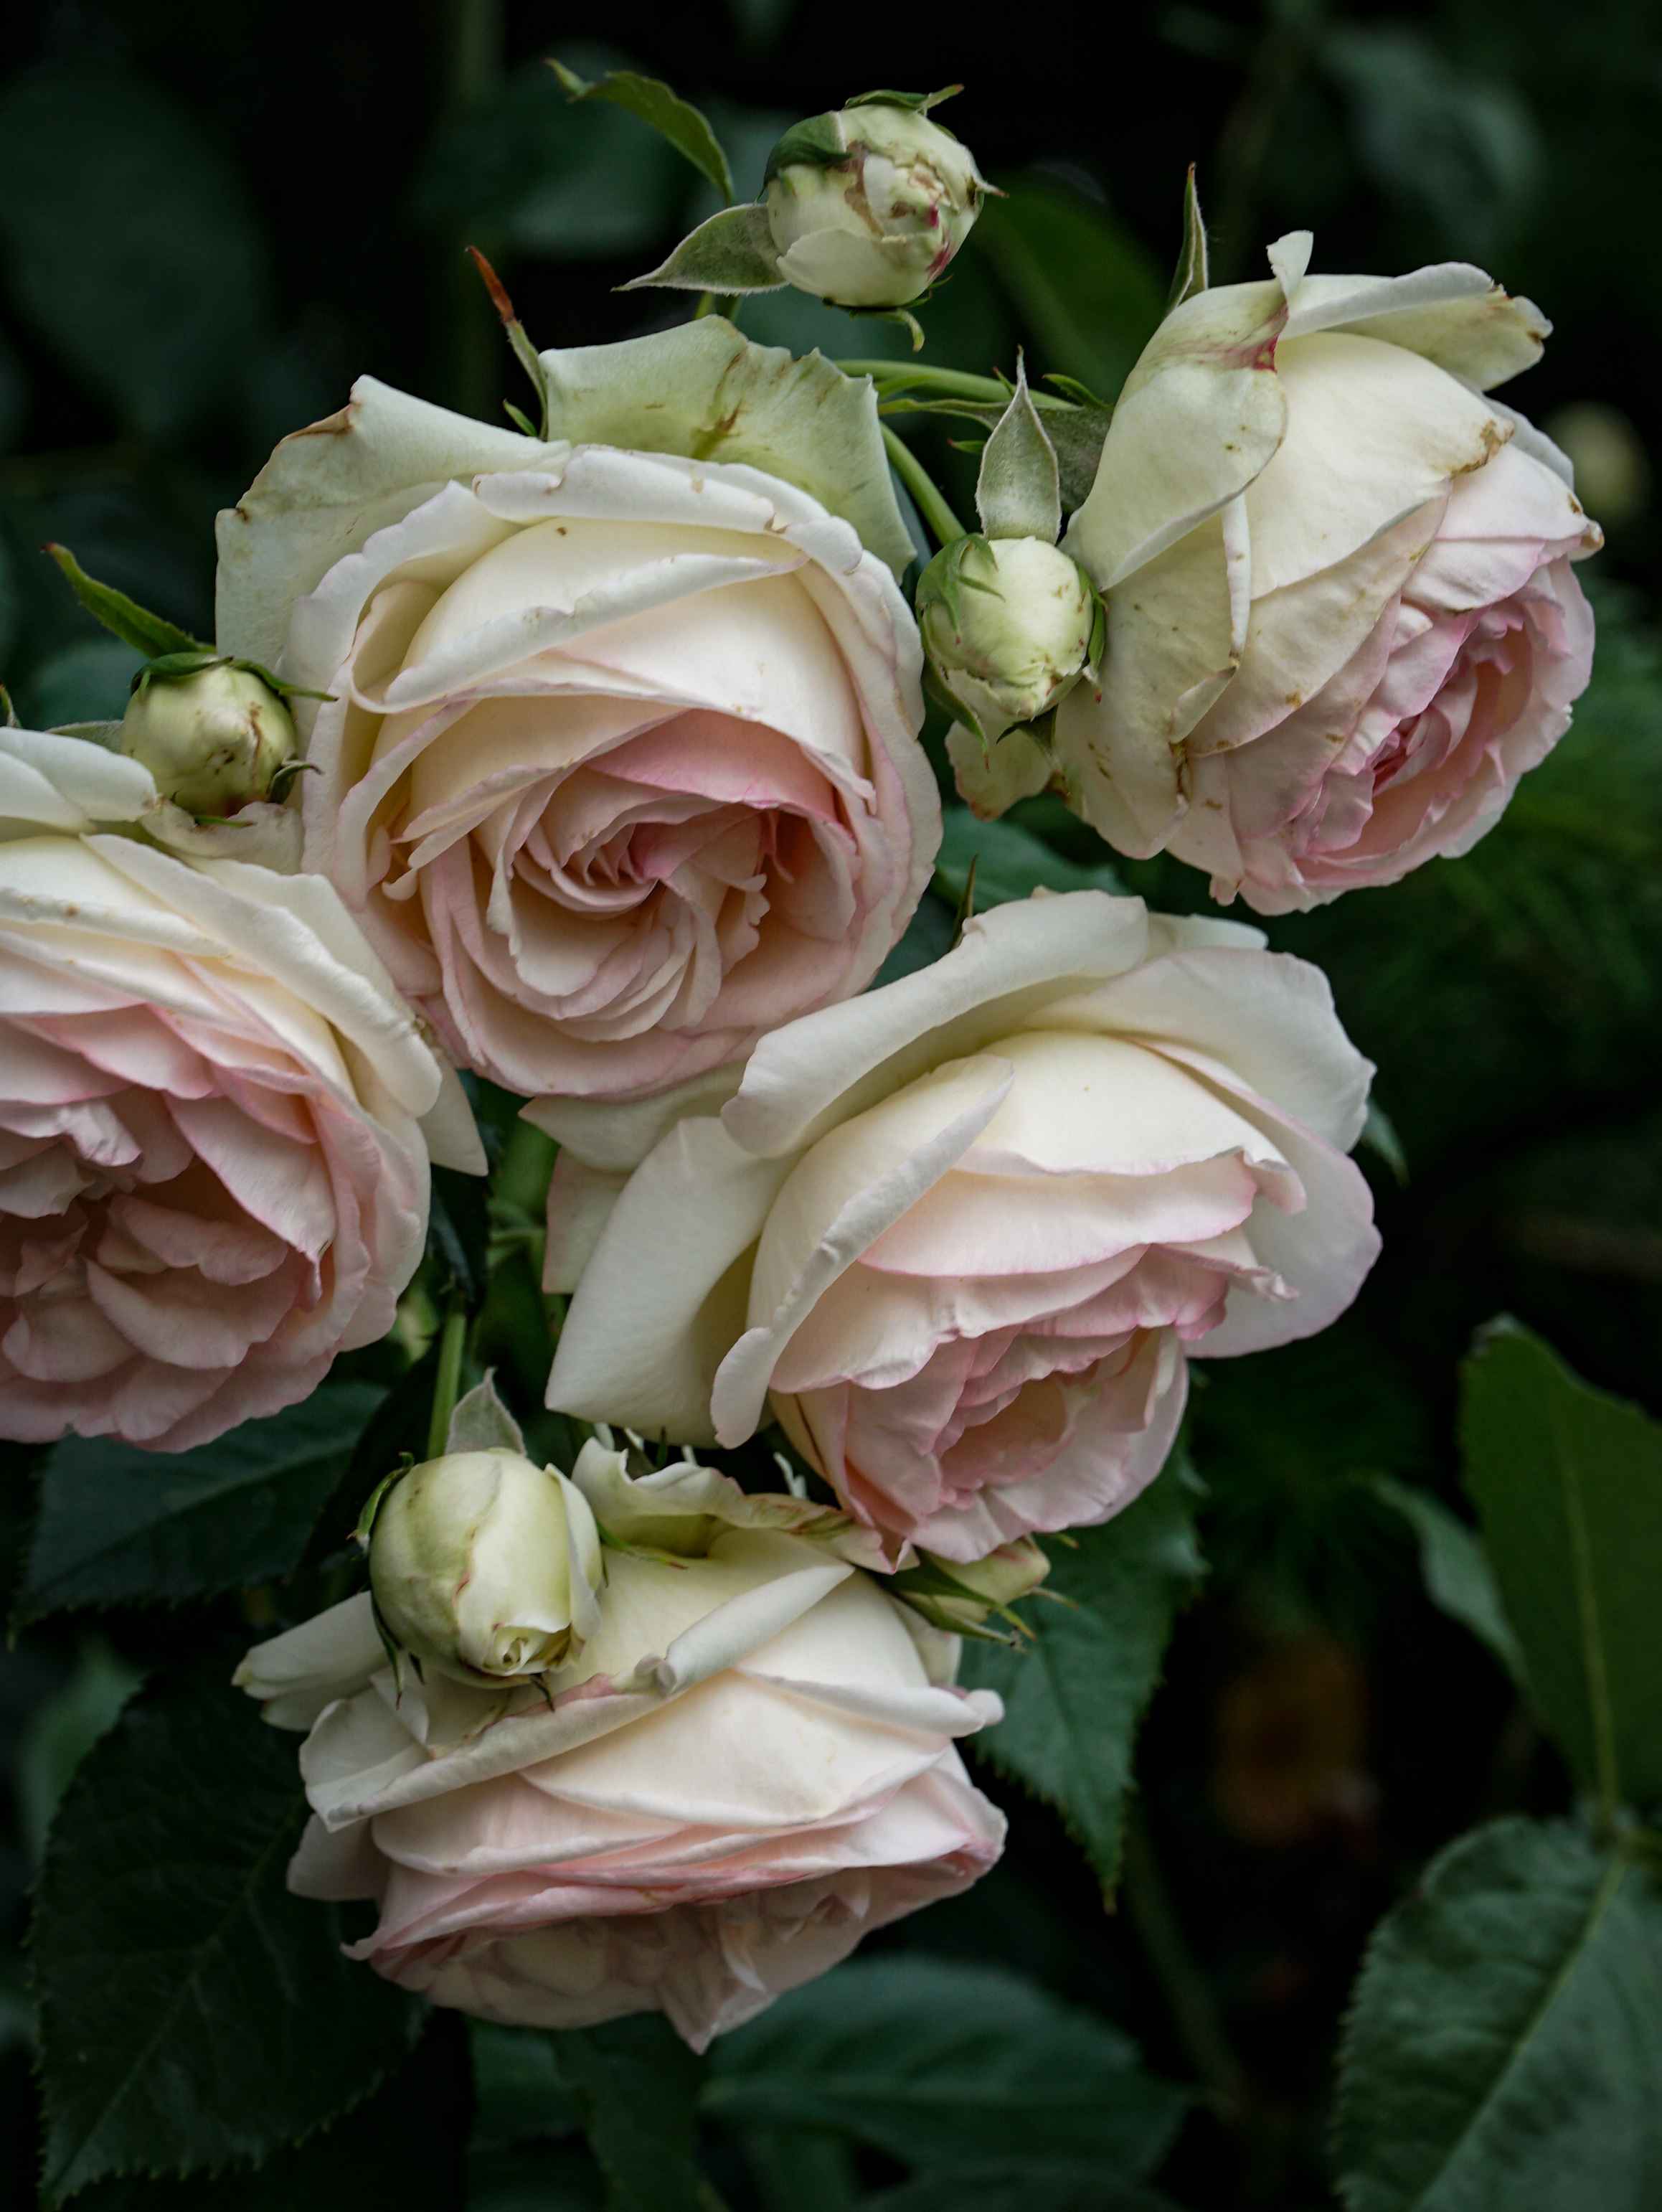 Pink pivon rose